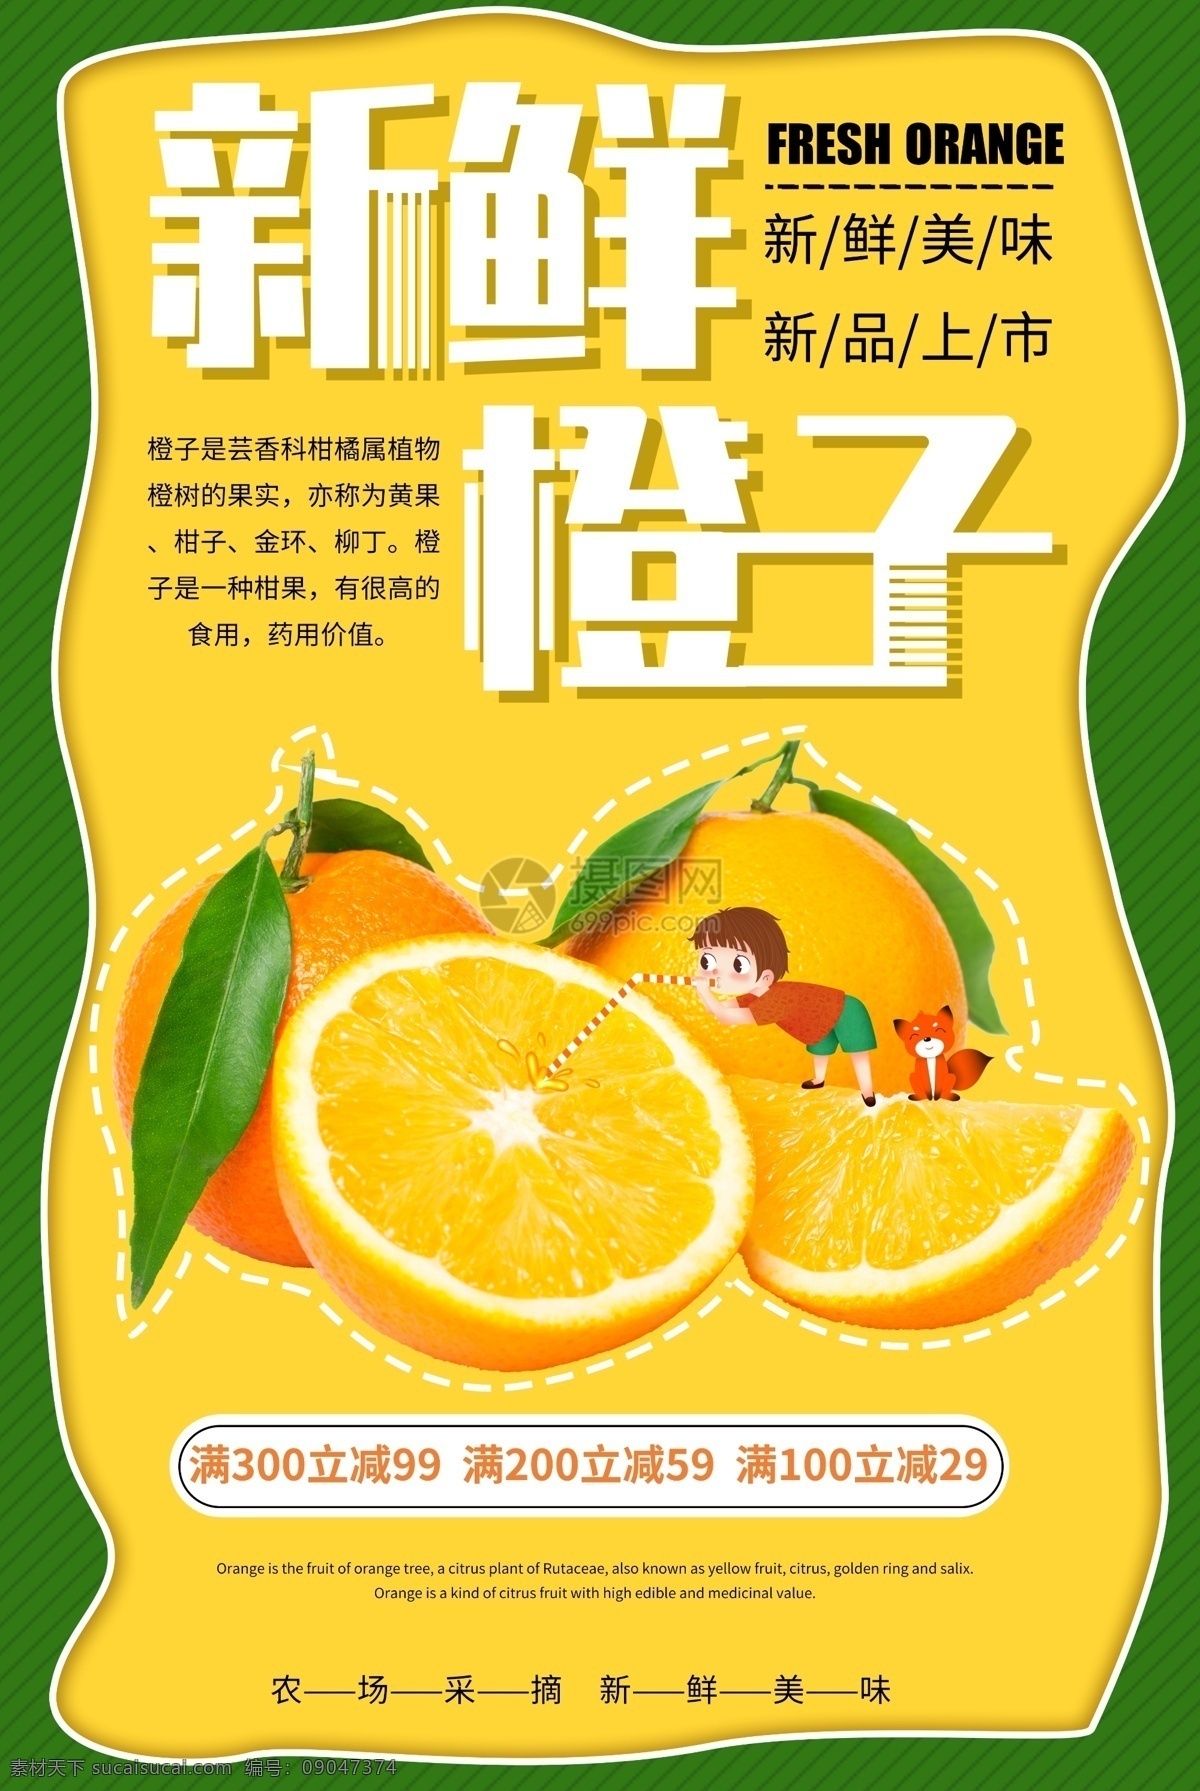 新鲜 橙子 促销 海报 橙汁 满减 水果 水果基地 果园 进口水果 热带水果 水果店 水果超市 有机水果 水果专卖 天然营养 水果海报